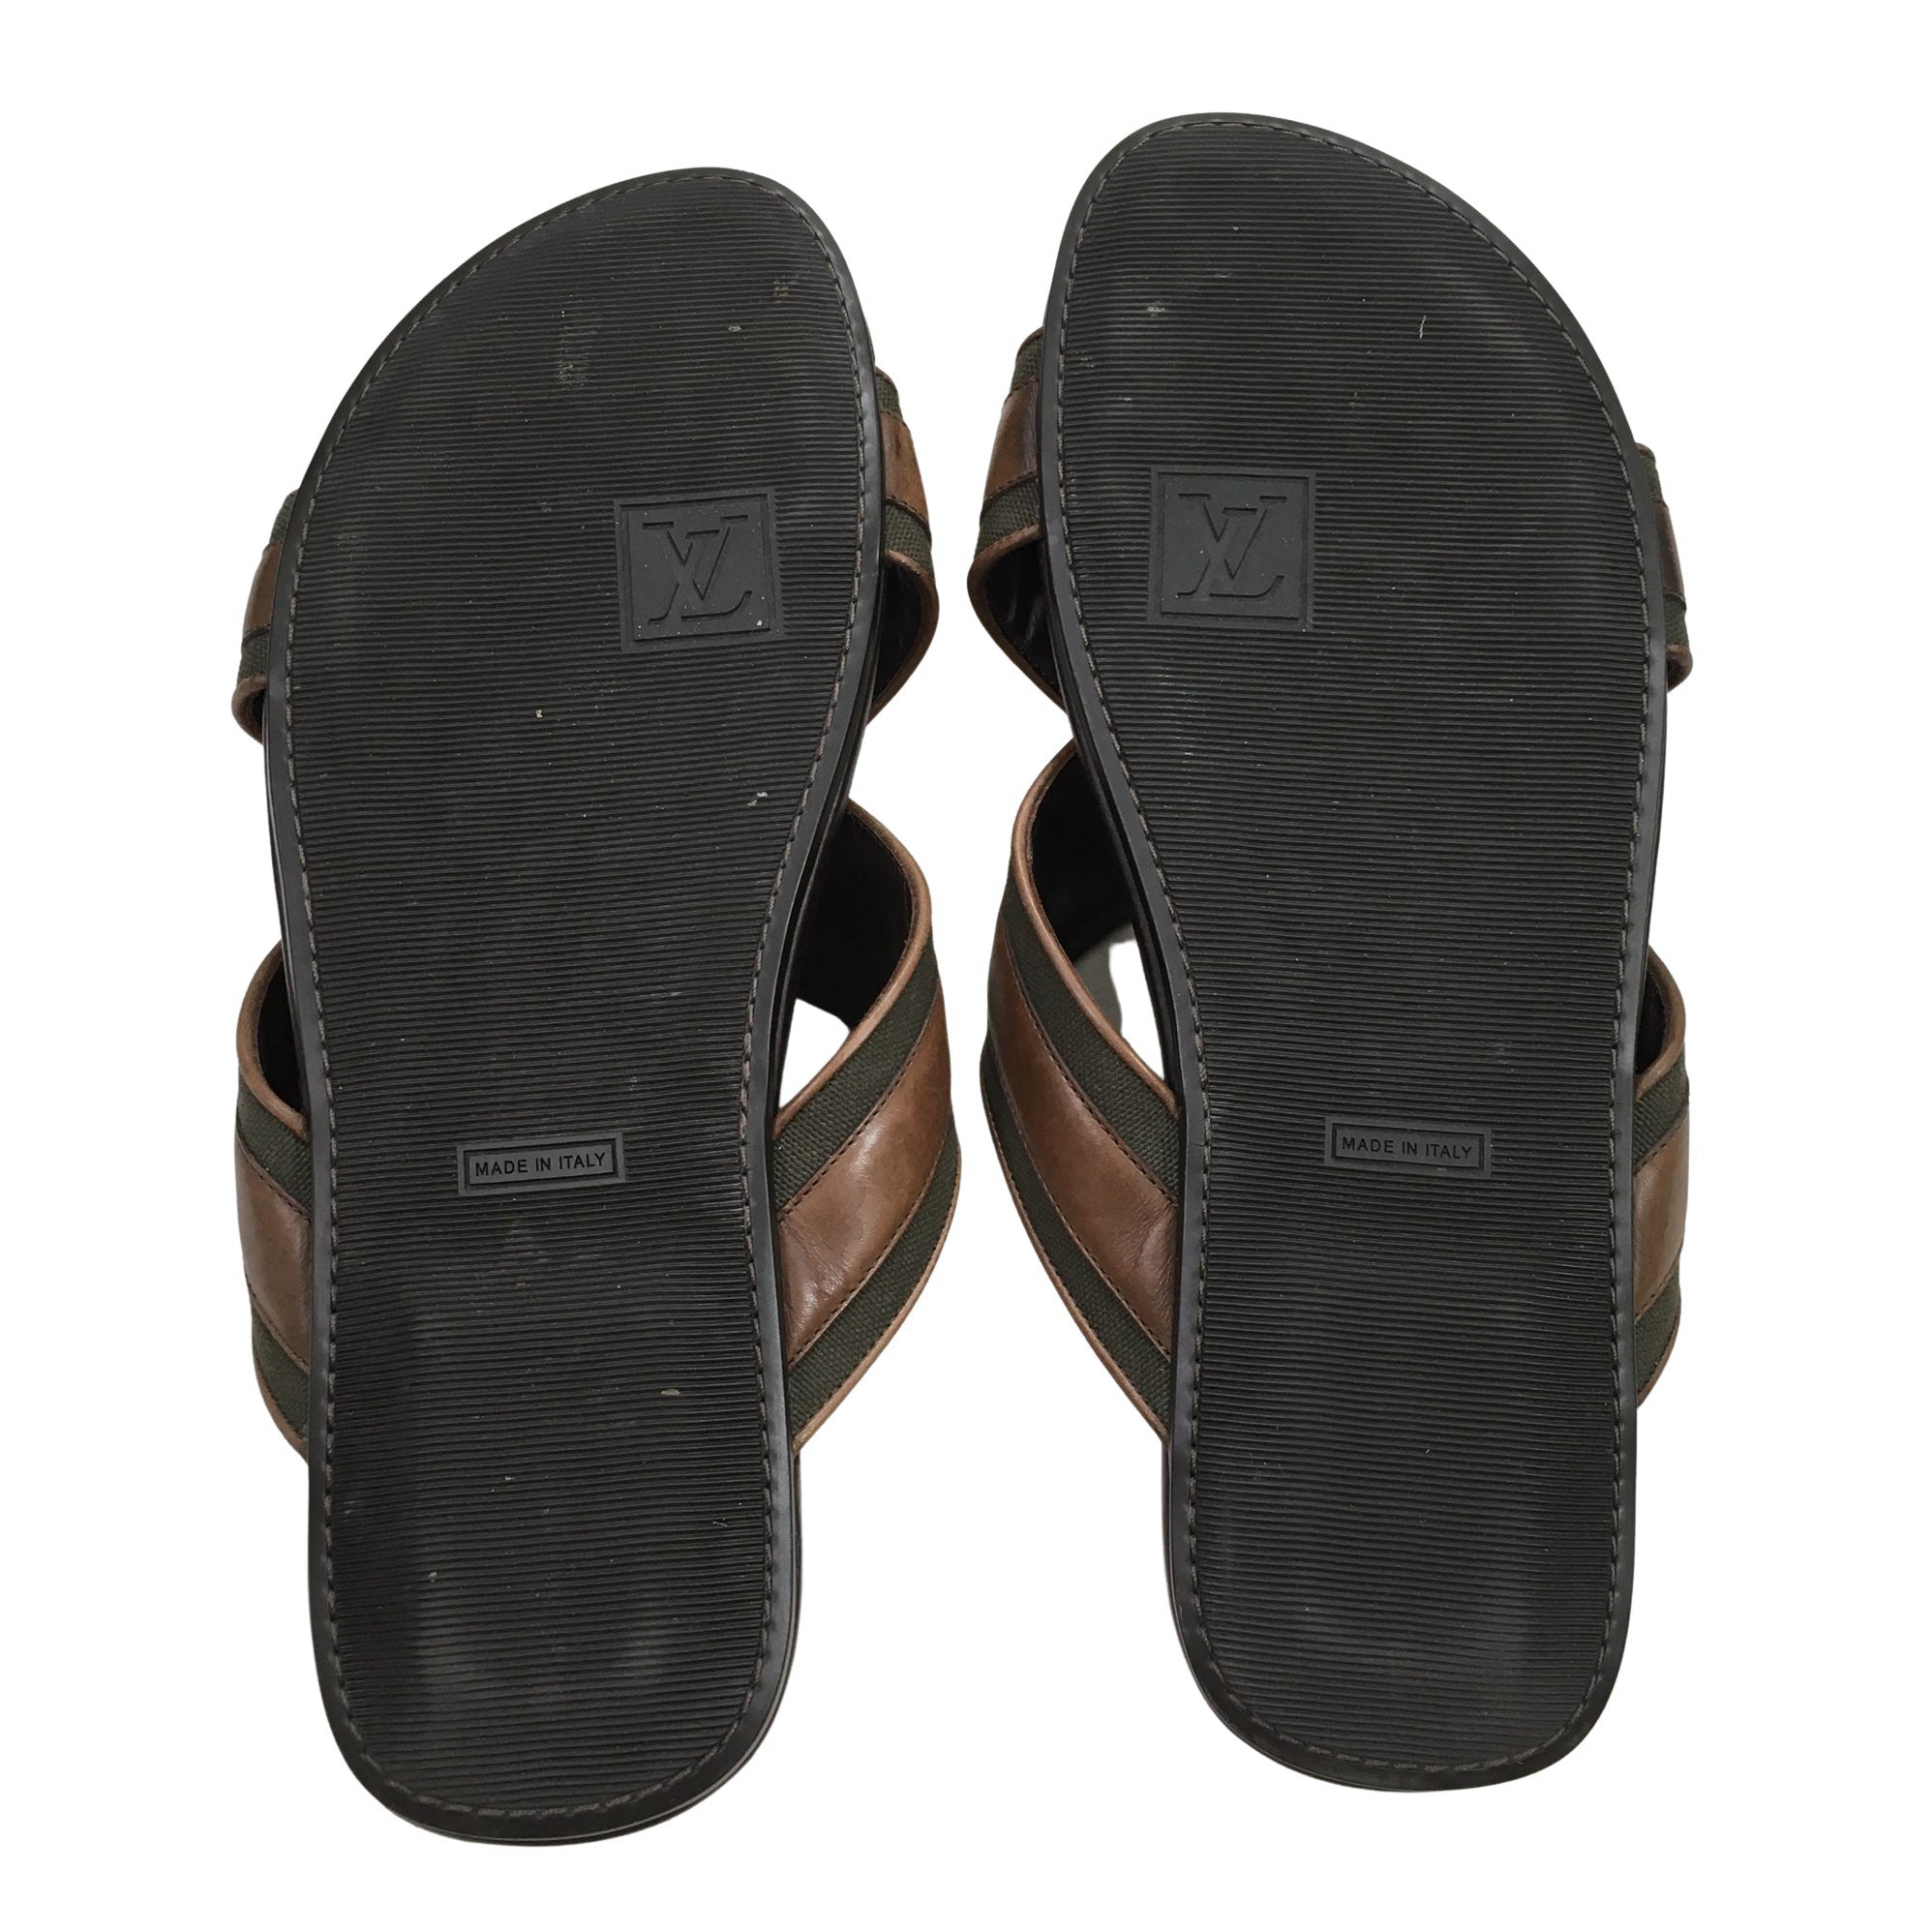 Cloth sandals Louis Vuitton Brown size 40 EU in Cloth - 34070371